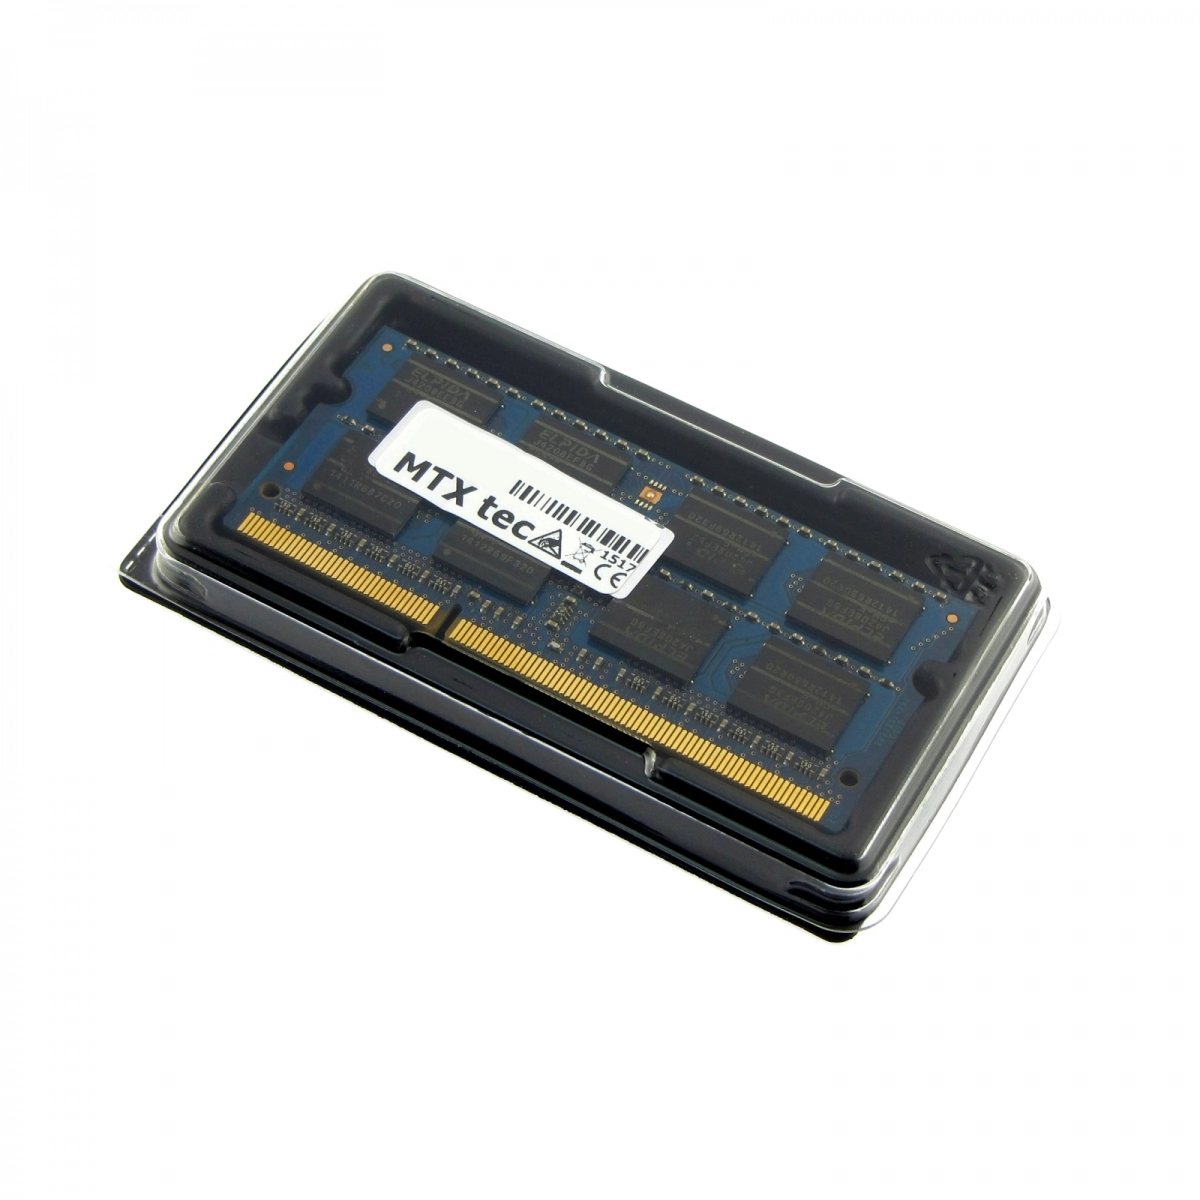 MTXtec Arbeitsspeicher 2 GB RAM für MEDION Akoya E1228 MD98721